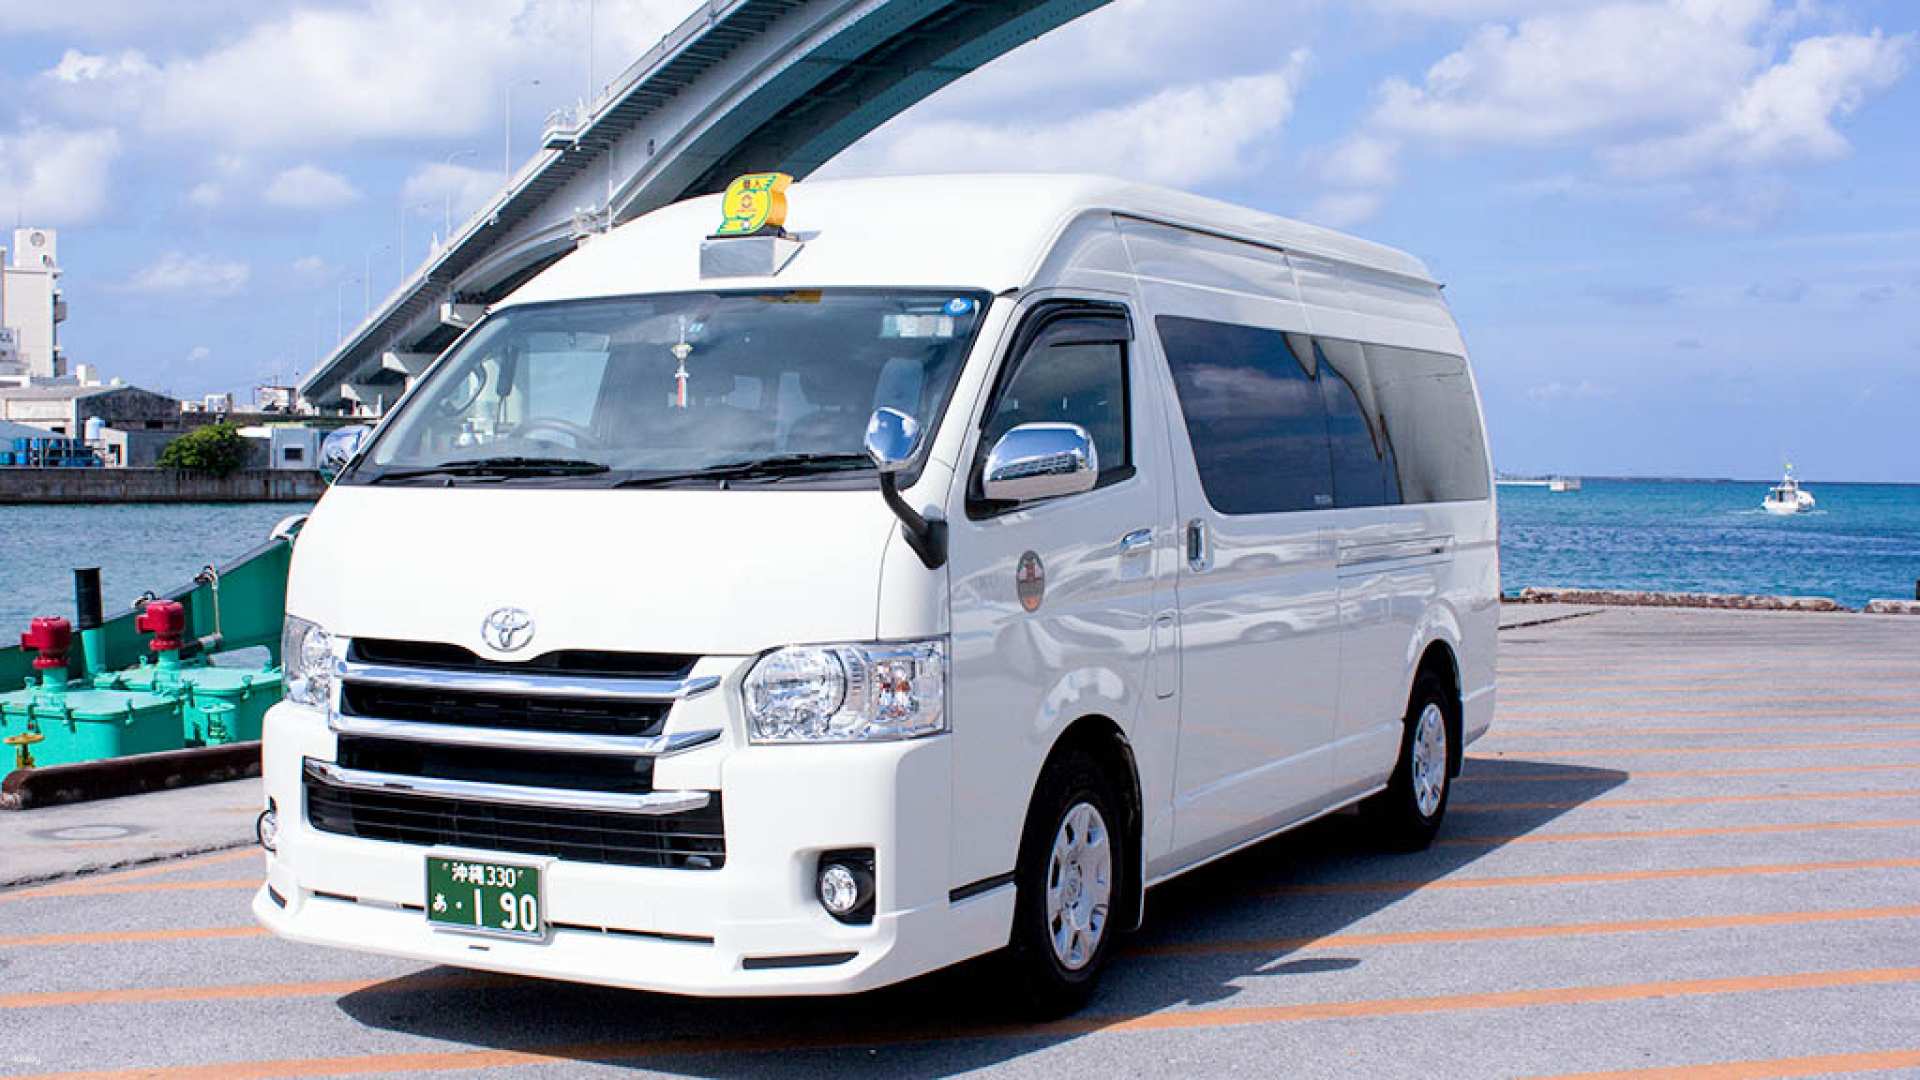 日本-沖繩包車旅遊| 精選4條沖繩熱門景點路線| 飯店&機場&郵輪港口接送